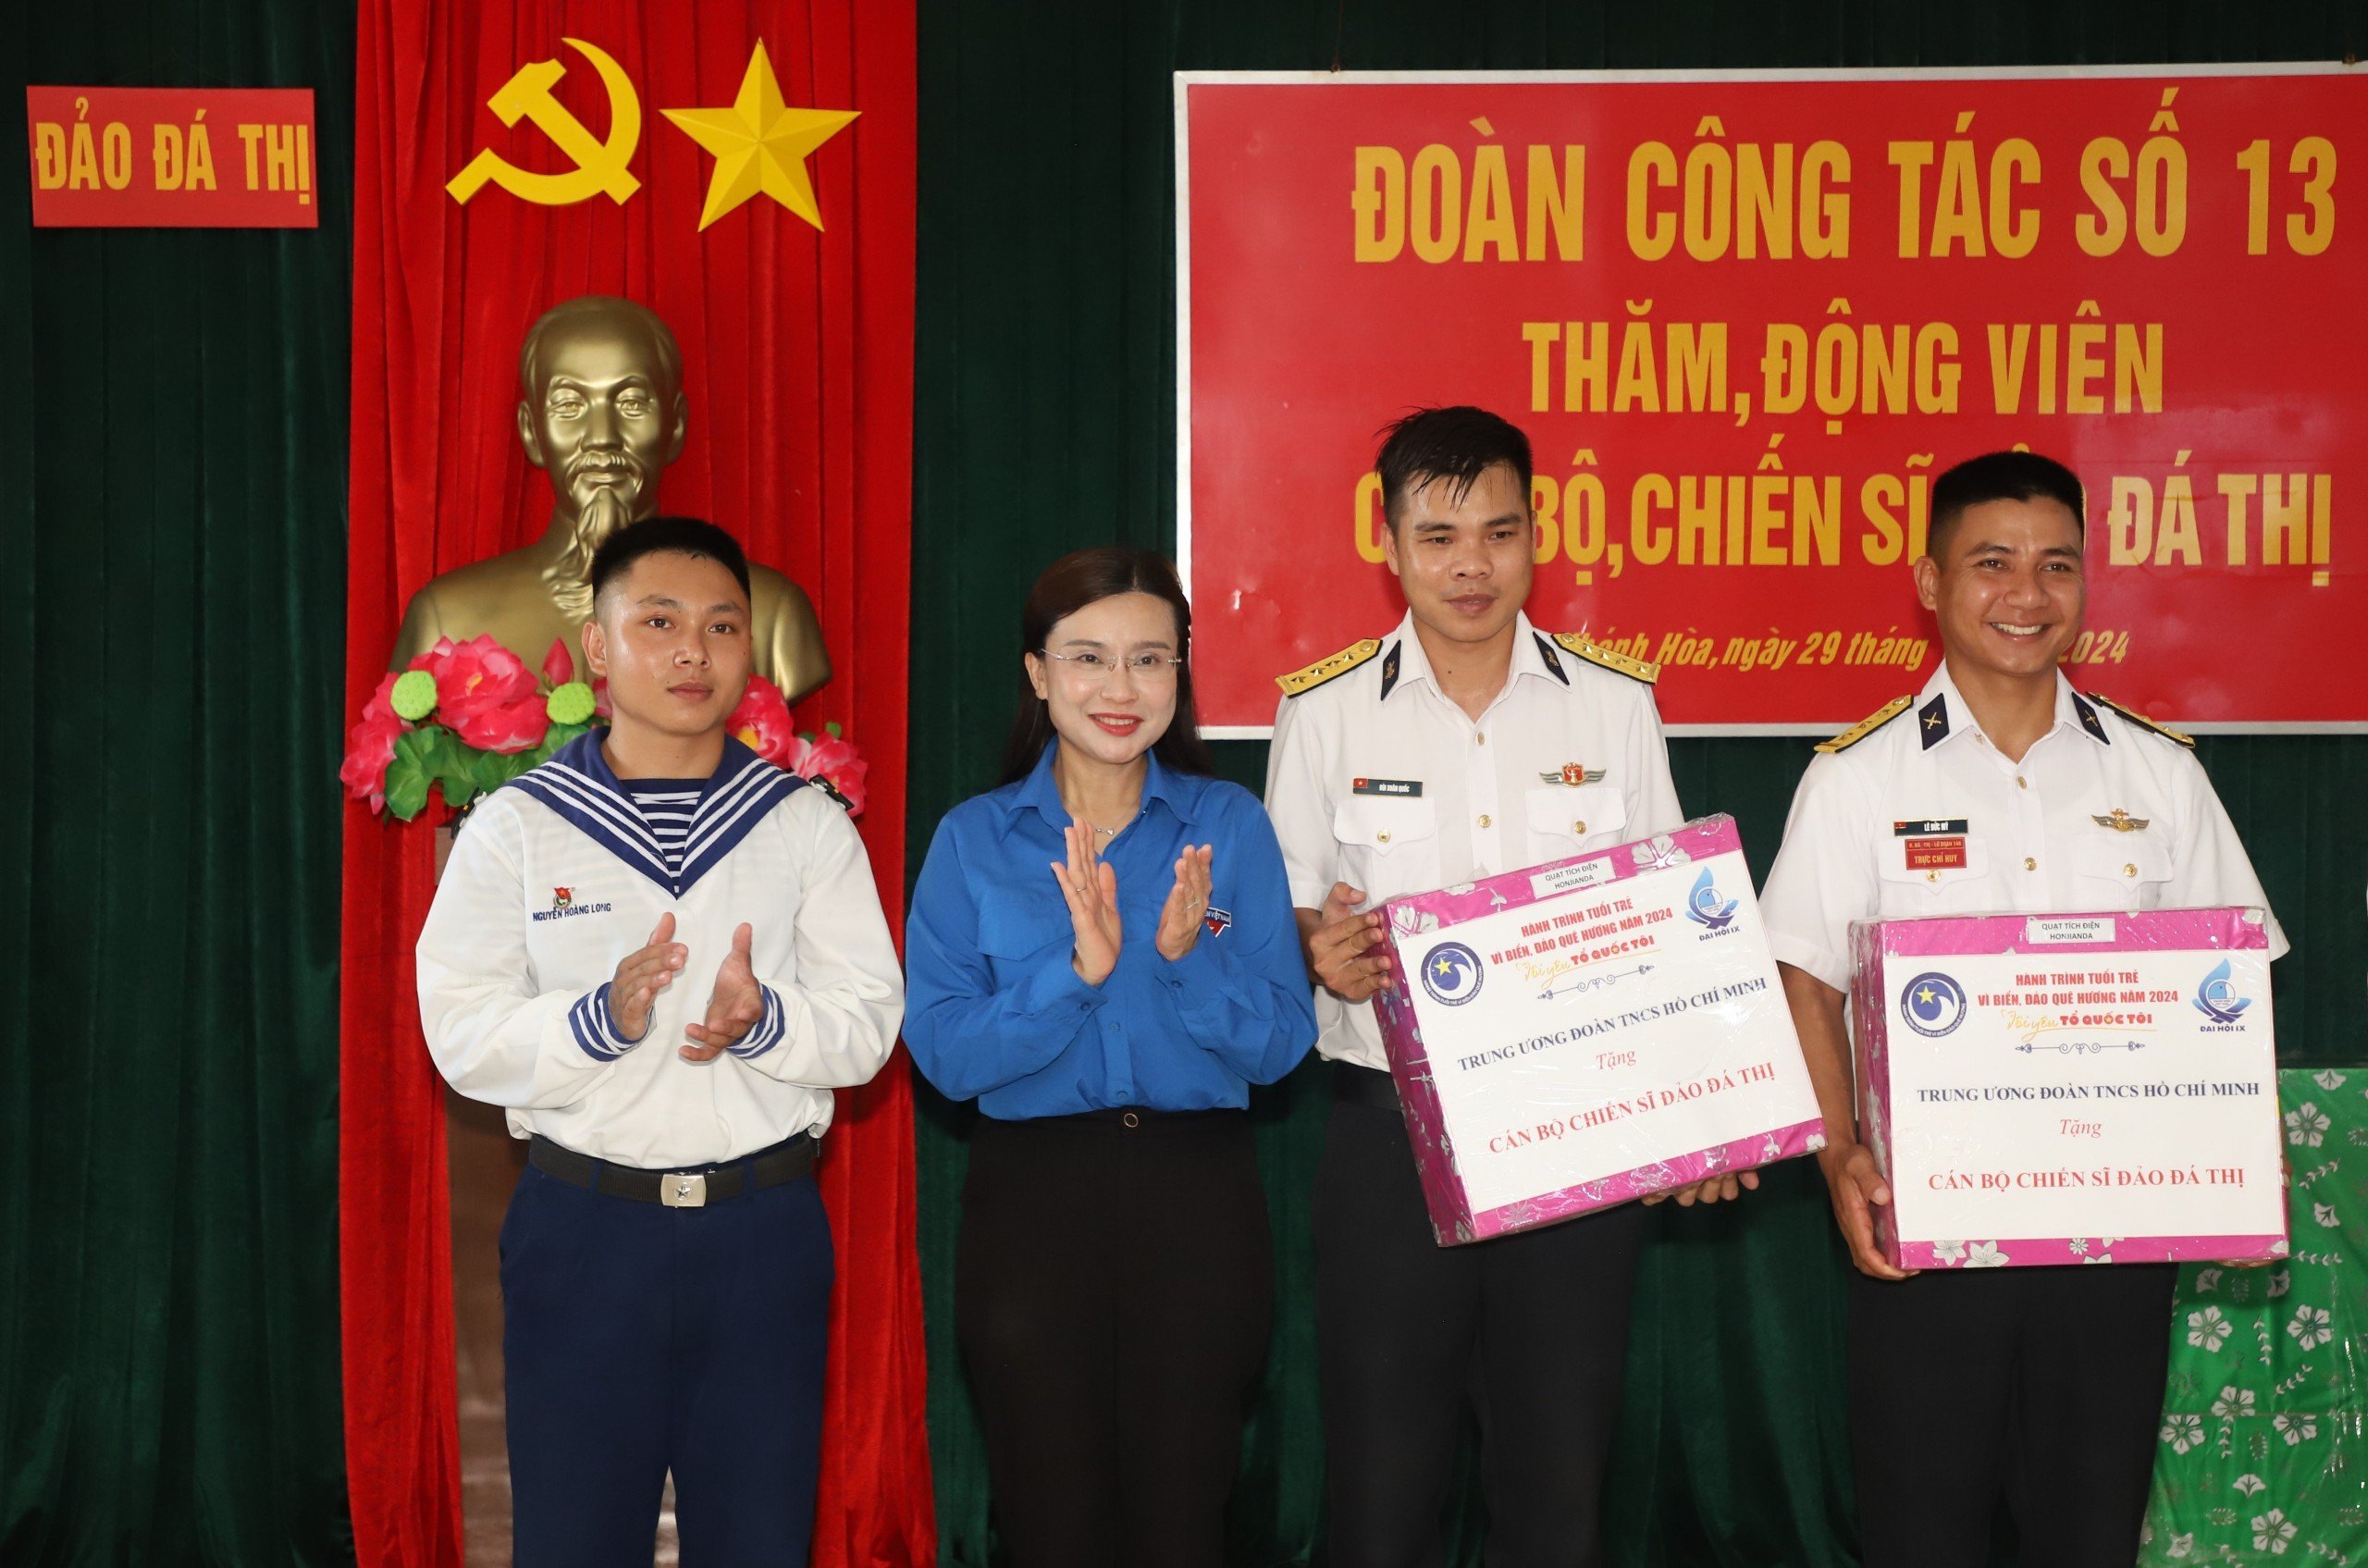 Chị Trang tặng quà cho các chiến sĩ ở Đảo Đá Thị